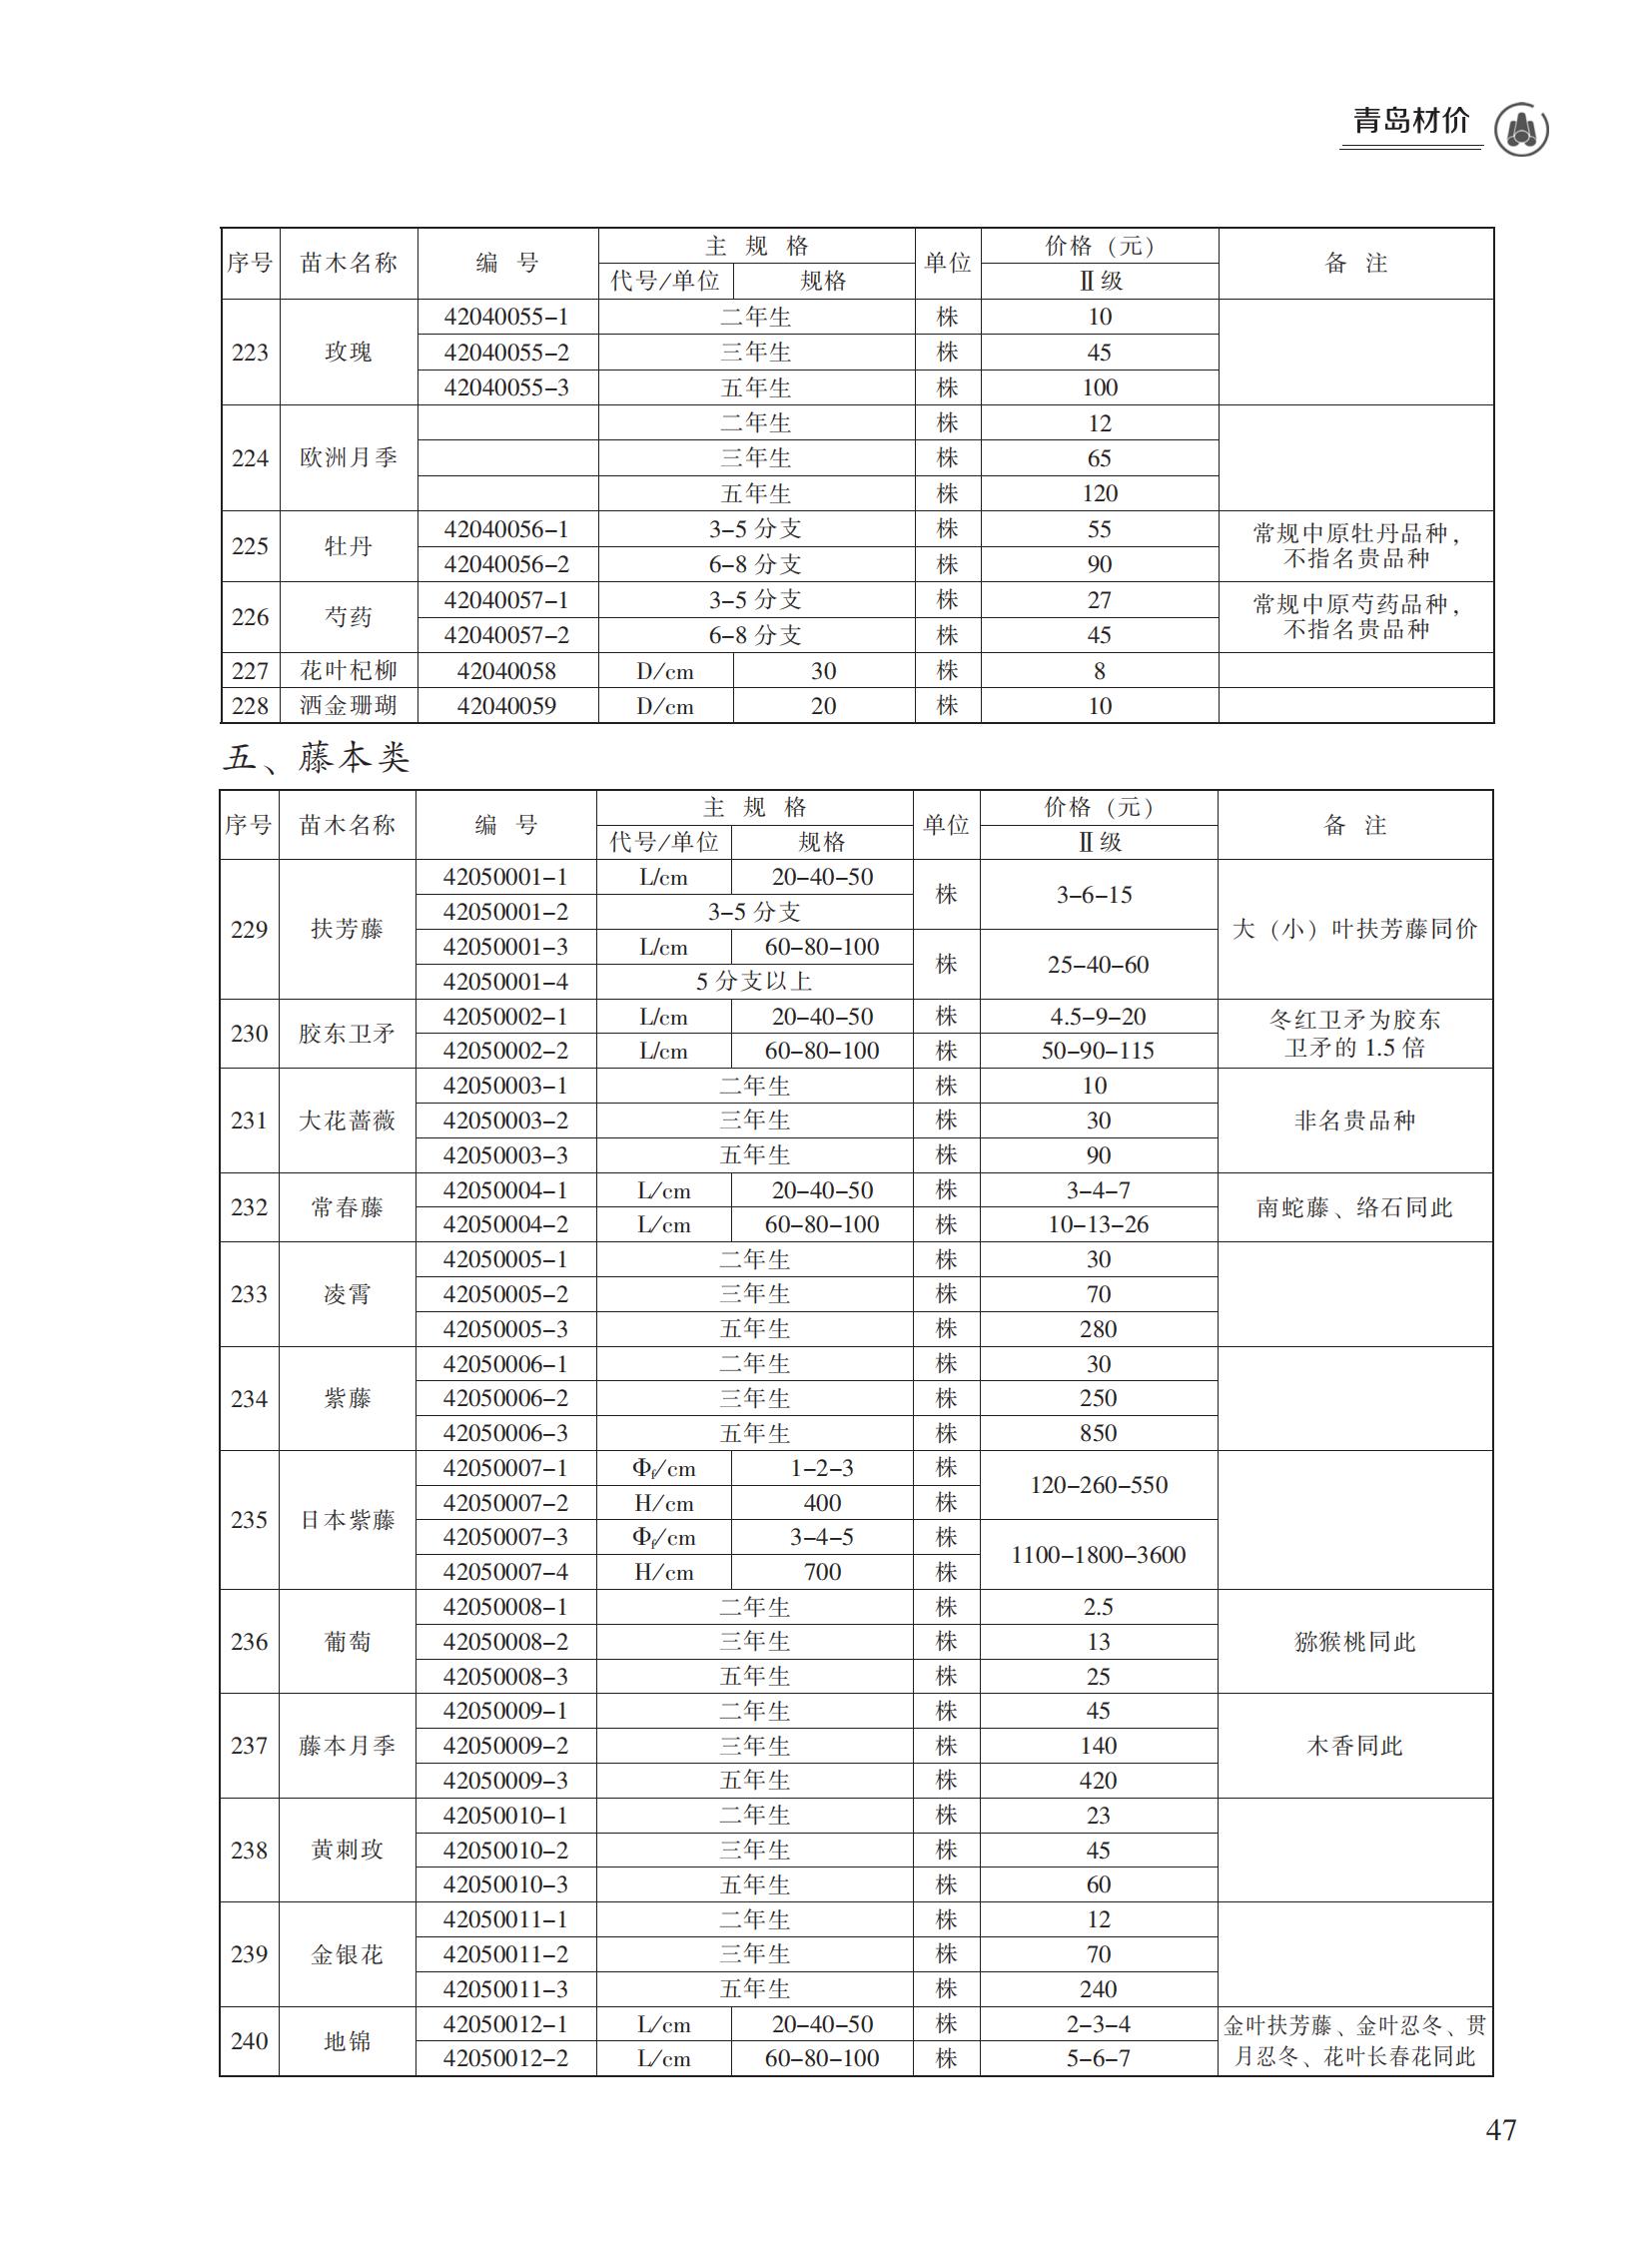 2023年1月青岛市建设工程材料价格及造价指数_46.jpg